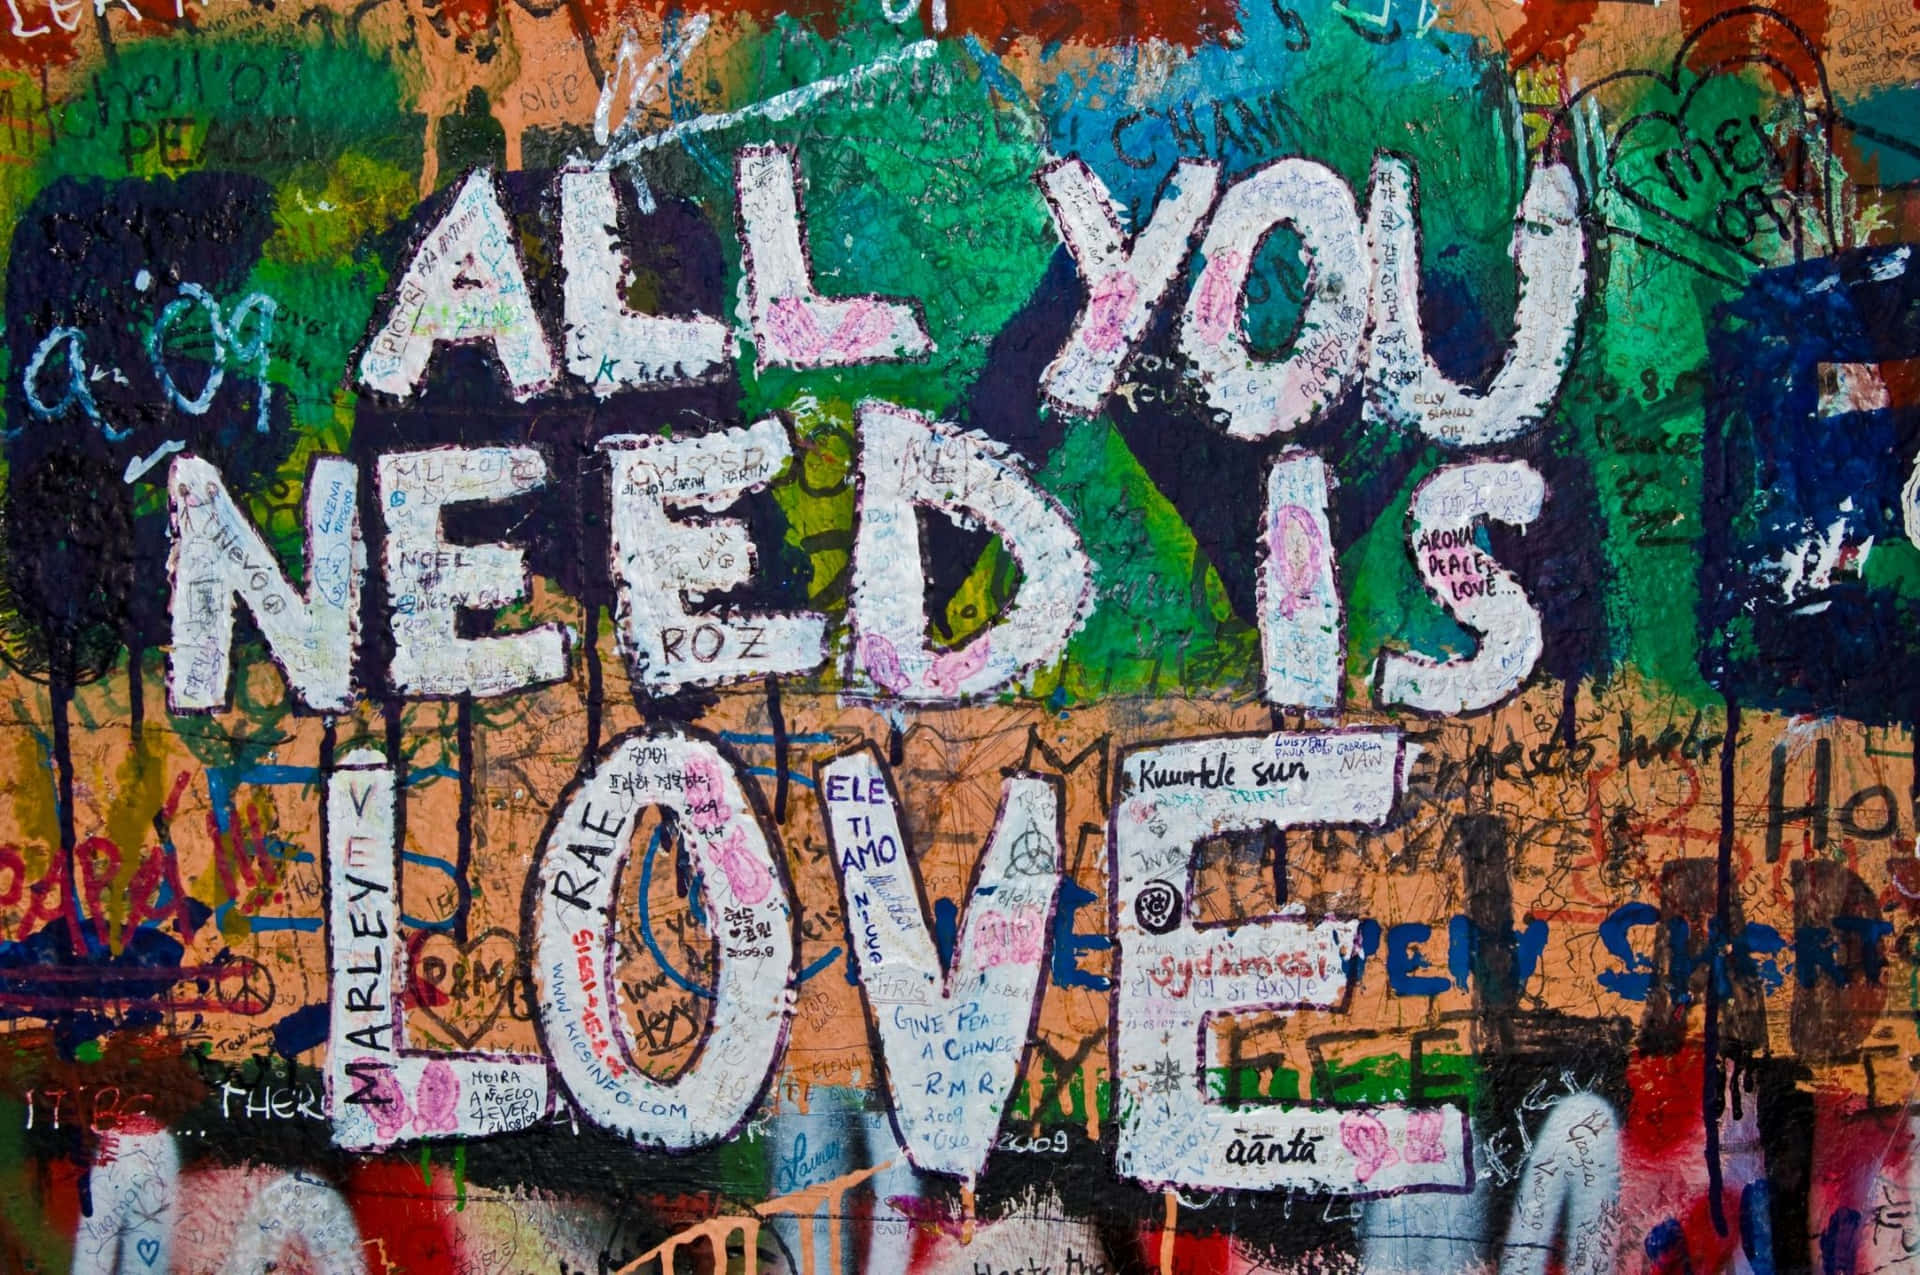 Alltdu Behöver Är Kärlek - Graffitivägg. Wallpaper